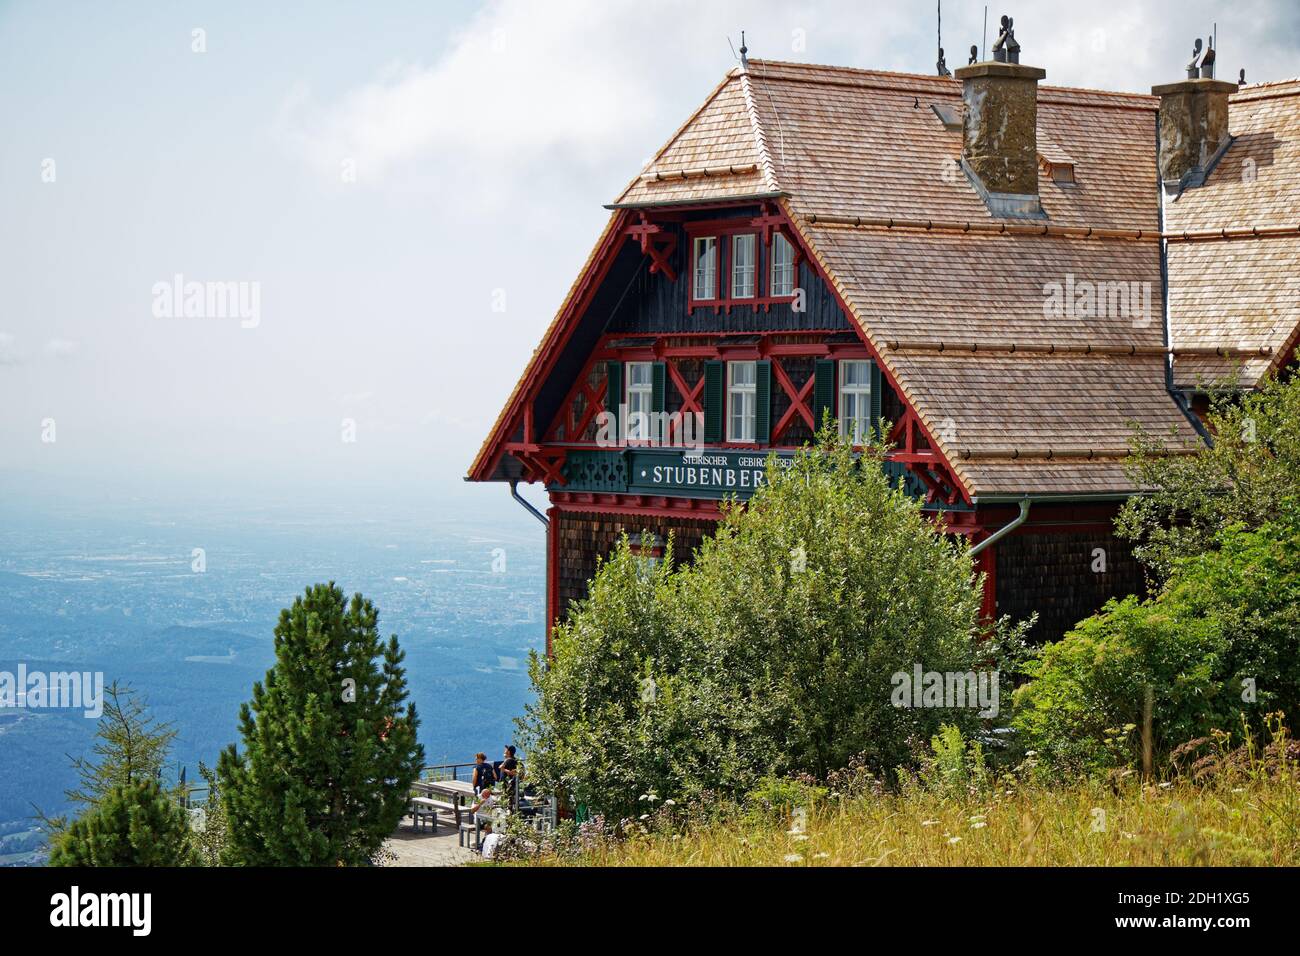 Closeup view on a mountain hut 'Stubenberghaus' on the Schockl mountain in Austria Stock Photo